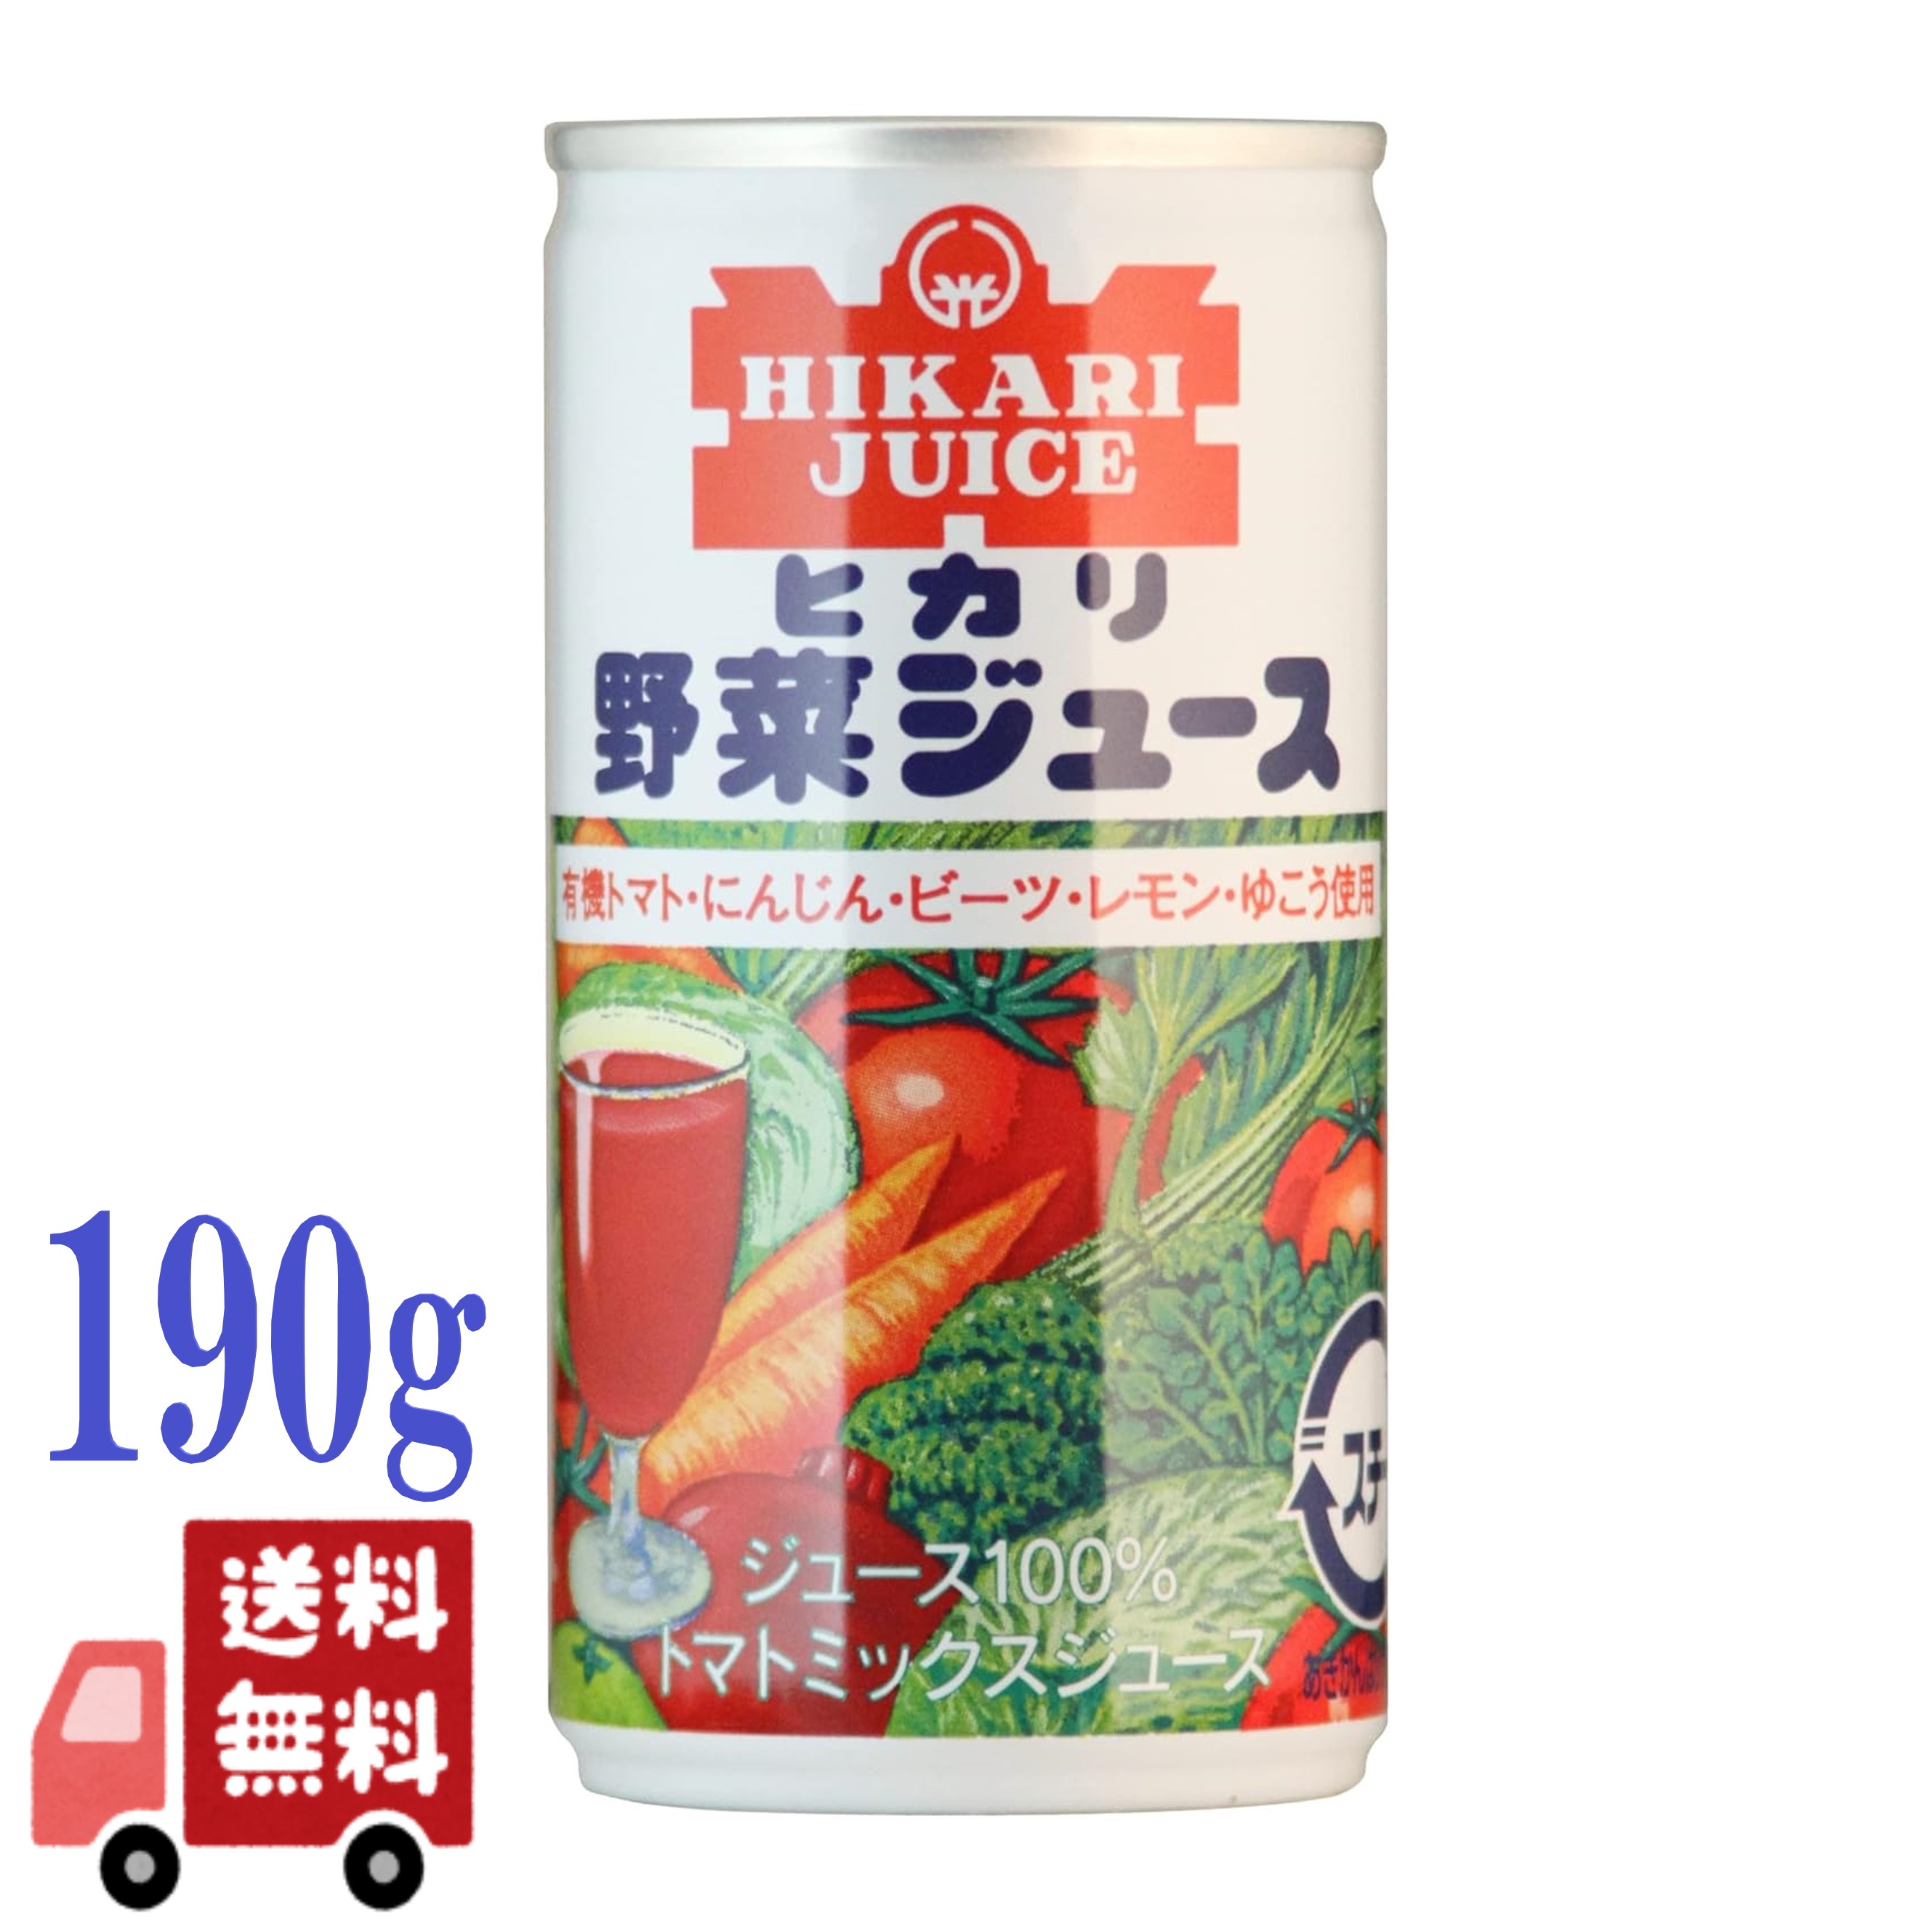 ヒカリ 有機 野菜ジュース 190g 有塩 光食品 オーガニック ミックスジュース トマトジュース 香料 保存料 着色料 酸味料不使用